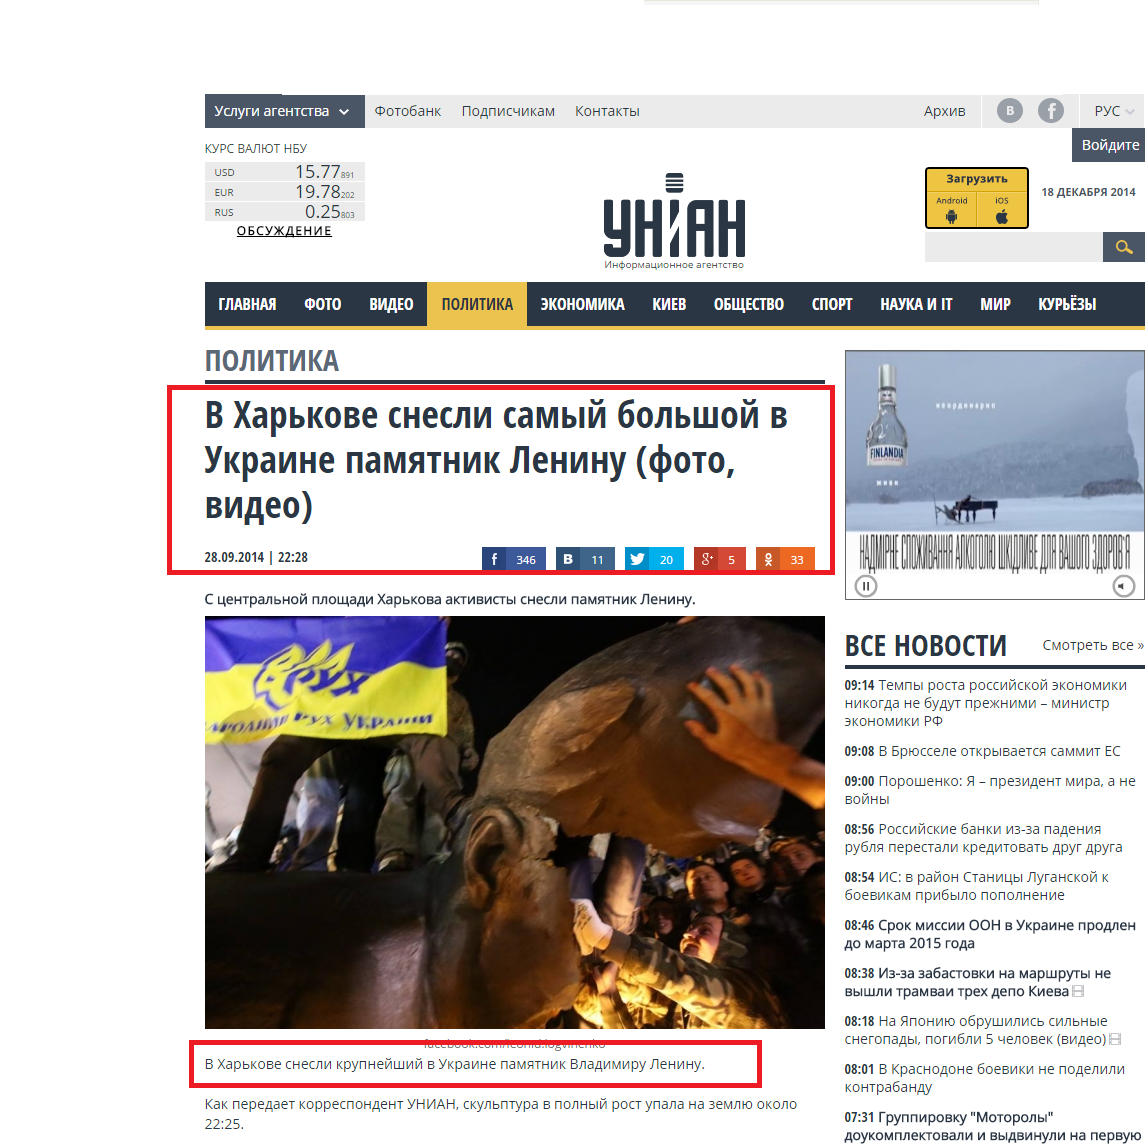 http://www.unian.net/politics/990013-v-harkove-snesli-samyiy-bolshoy-v-ukraine-pamyatnik-leninu-foto-video.html#ad-image-0